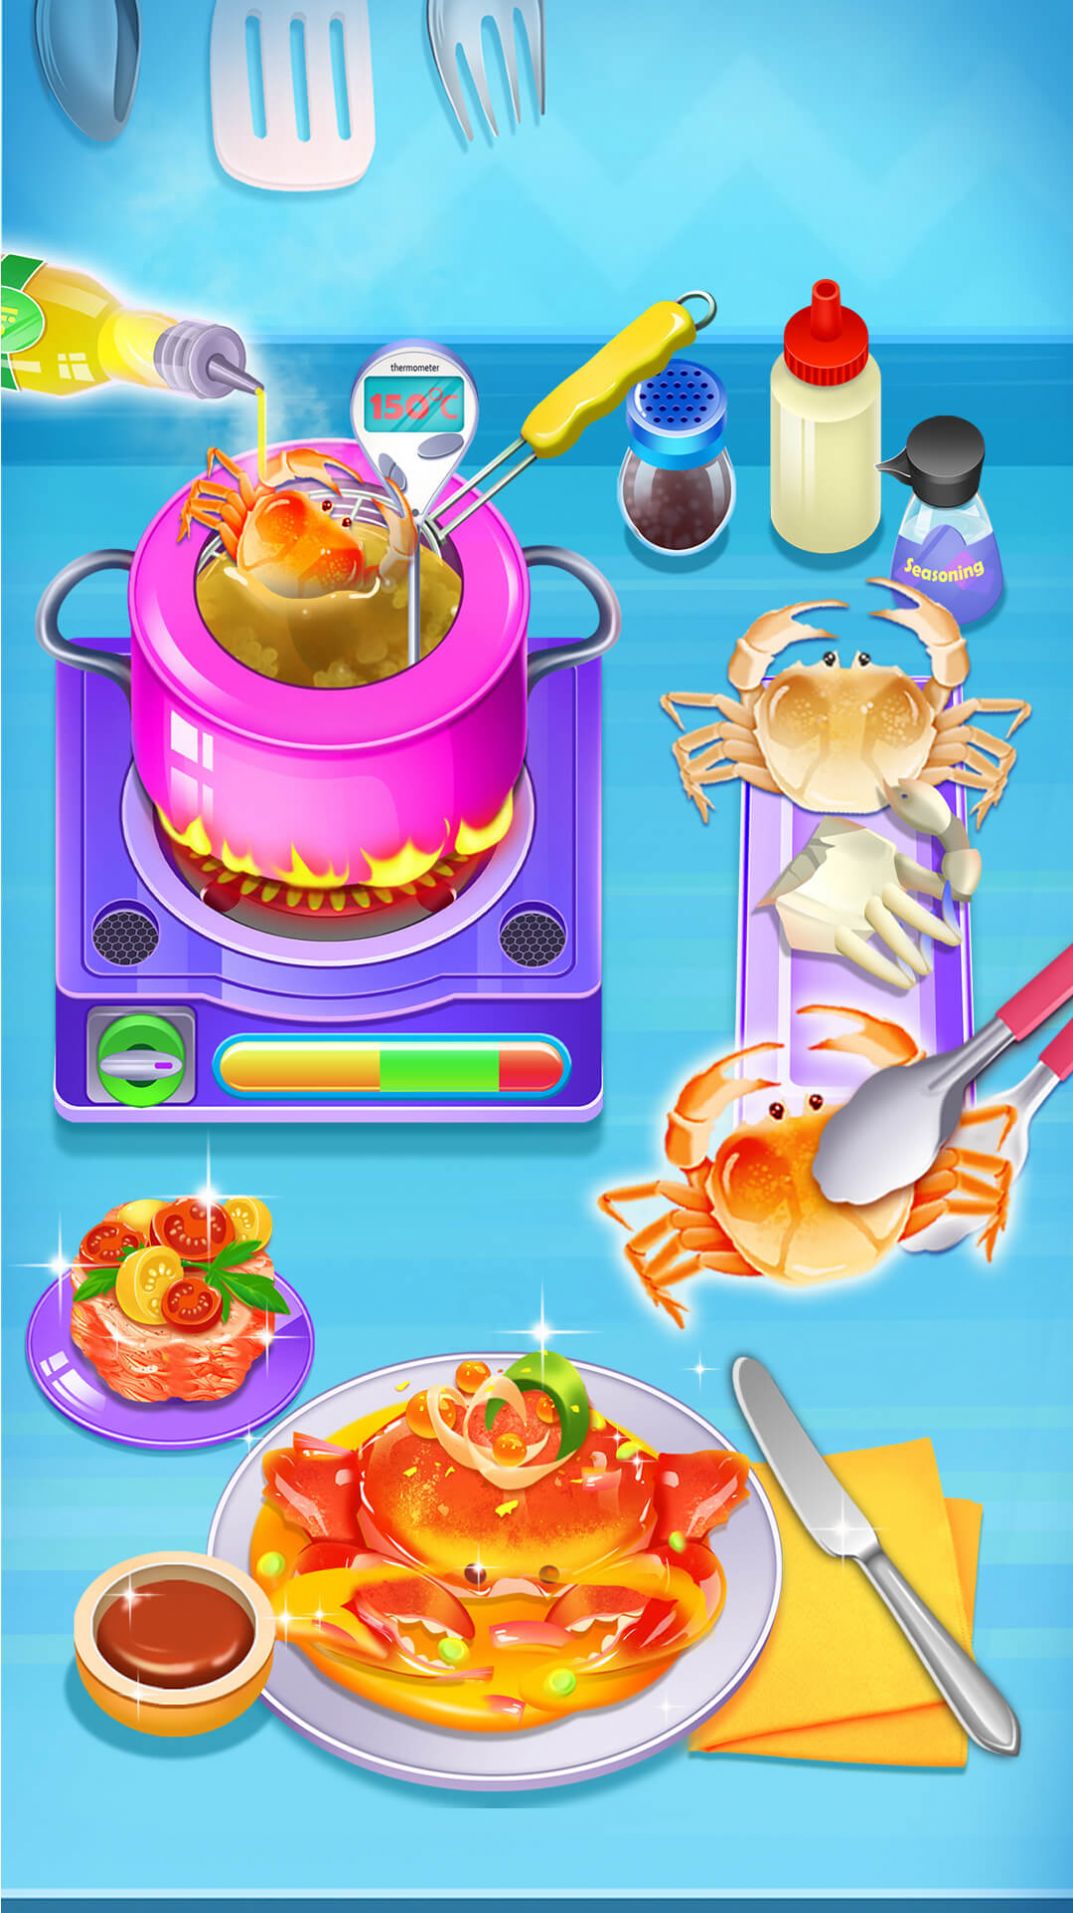 美味螃蟹大餐烹饪制作